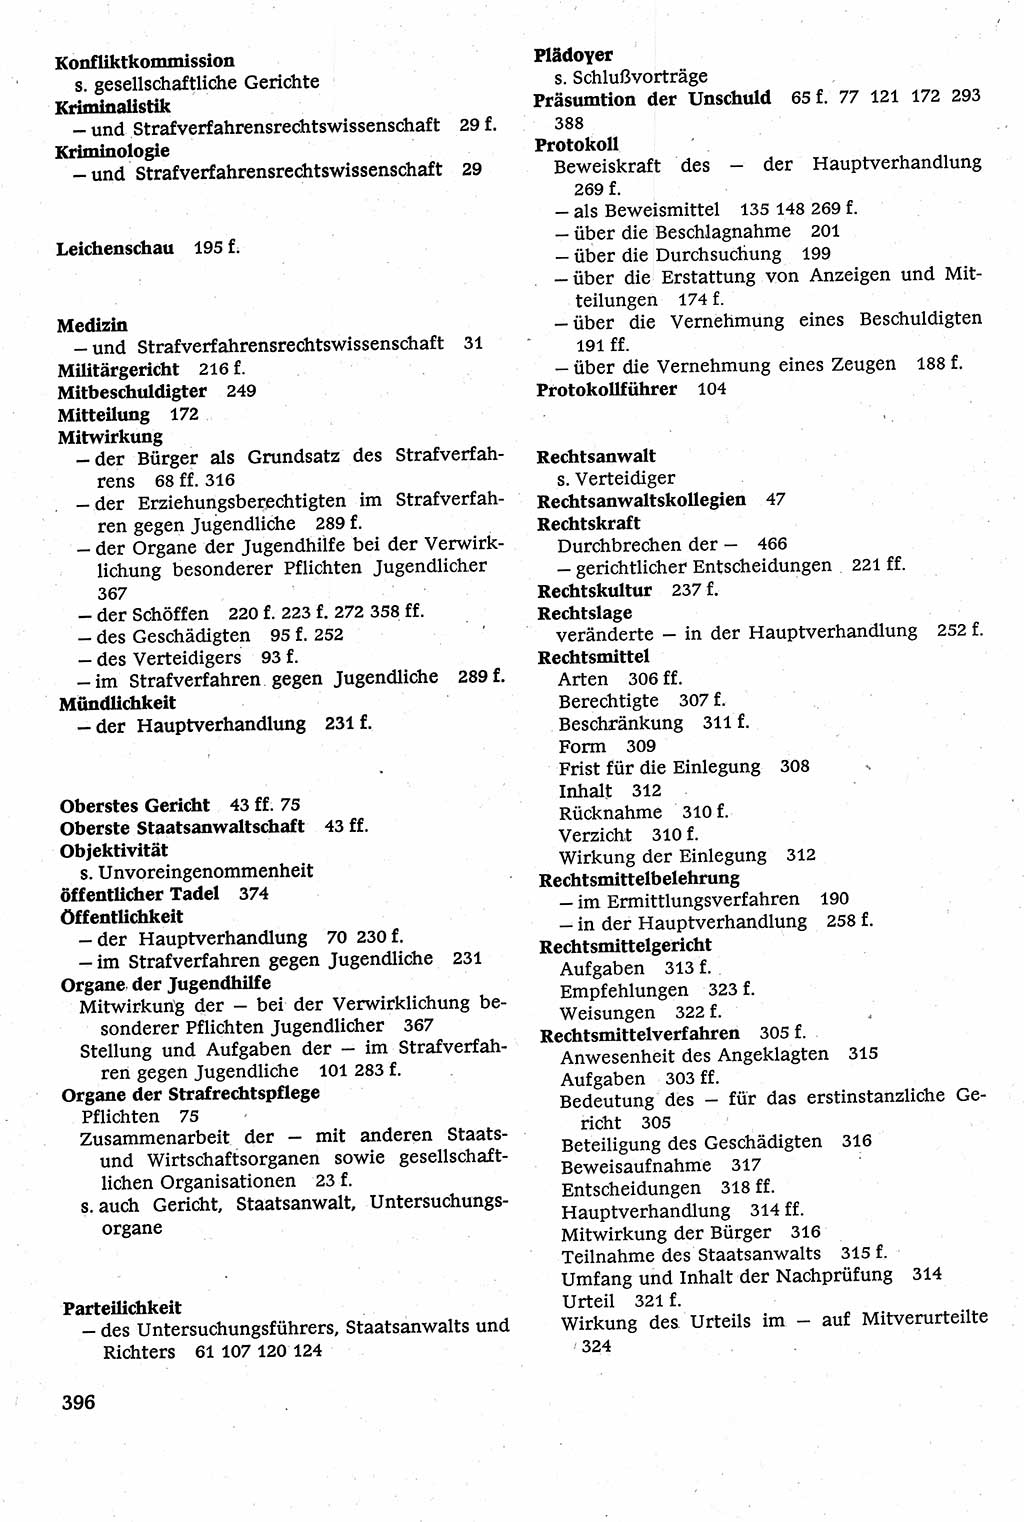 Strafverfahrensrecht [Deutsche Demokratische Republik (DDR)], Lehrbuch 1982, Seite 396 (Strafverf.-R. DDR Lb. 1982, S. 396)